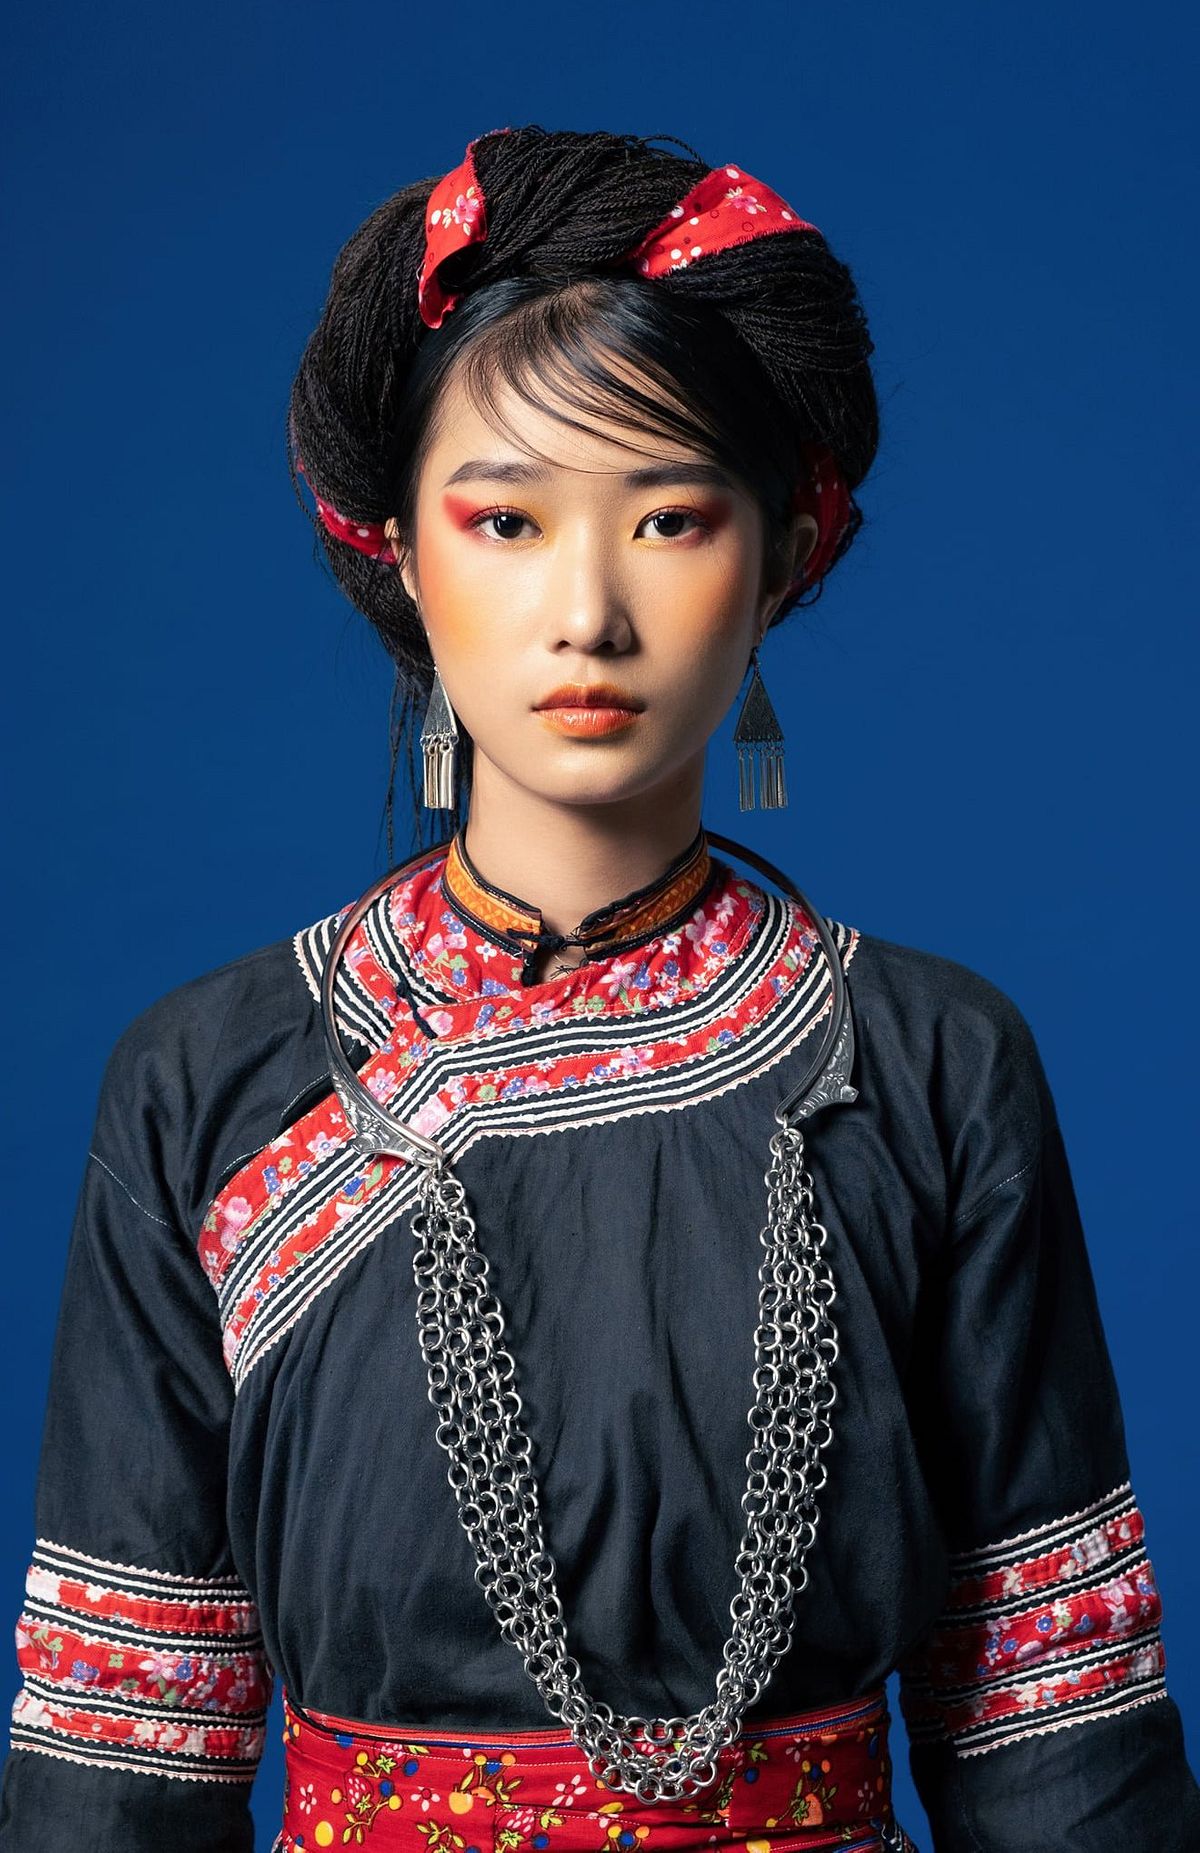 Với bộ sưu tập trang phục dân tộc H\'Mông đầy màu sắc và độc đáo, chúng tôi muốn giới thiệu với bạn di sản văn hóa nổi bật của dân tộc thiểu số ở Việt Nam. Qua tranh vẽ sáng tạo và đầy màu sắc, chúng tôi hy vọng bạn sẽ tìm thấy sự tự hào về tài sản văn hóa giá trị ấy.